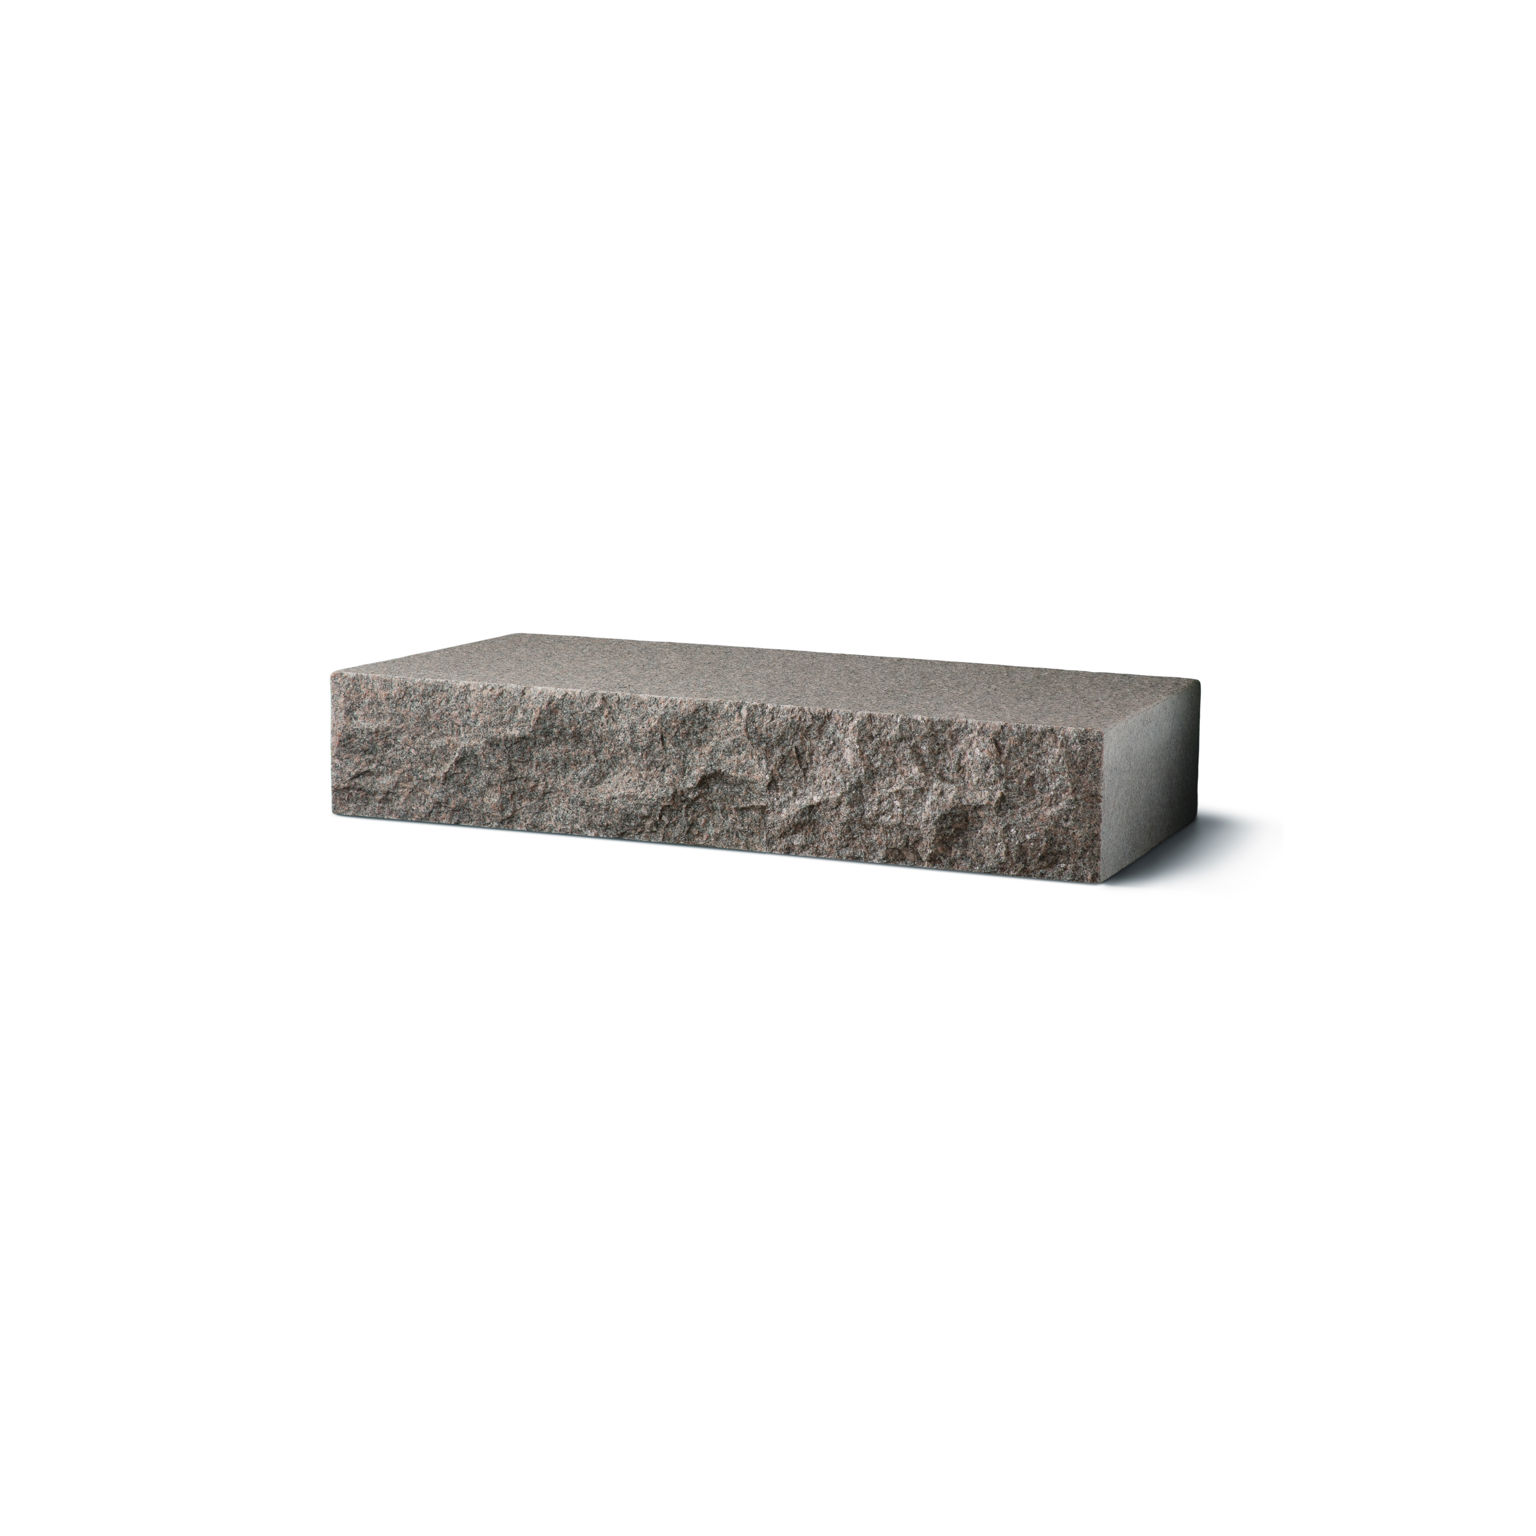 Produktbild på blocksteg i granit med flammad topp och råkilad front;i måtten 1050x350x150 mm och i färgen Bohus grå.